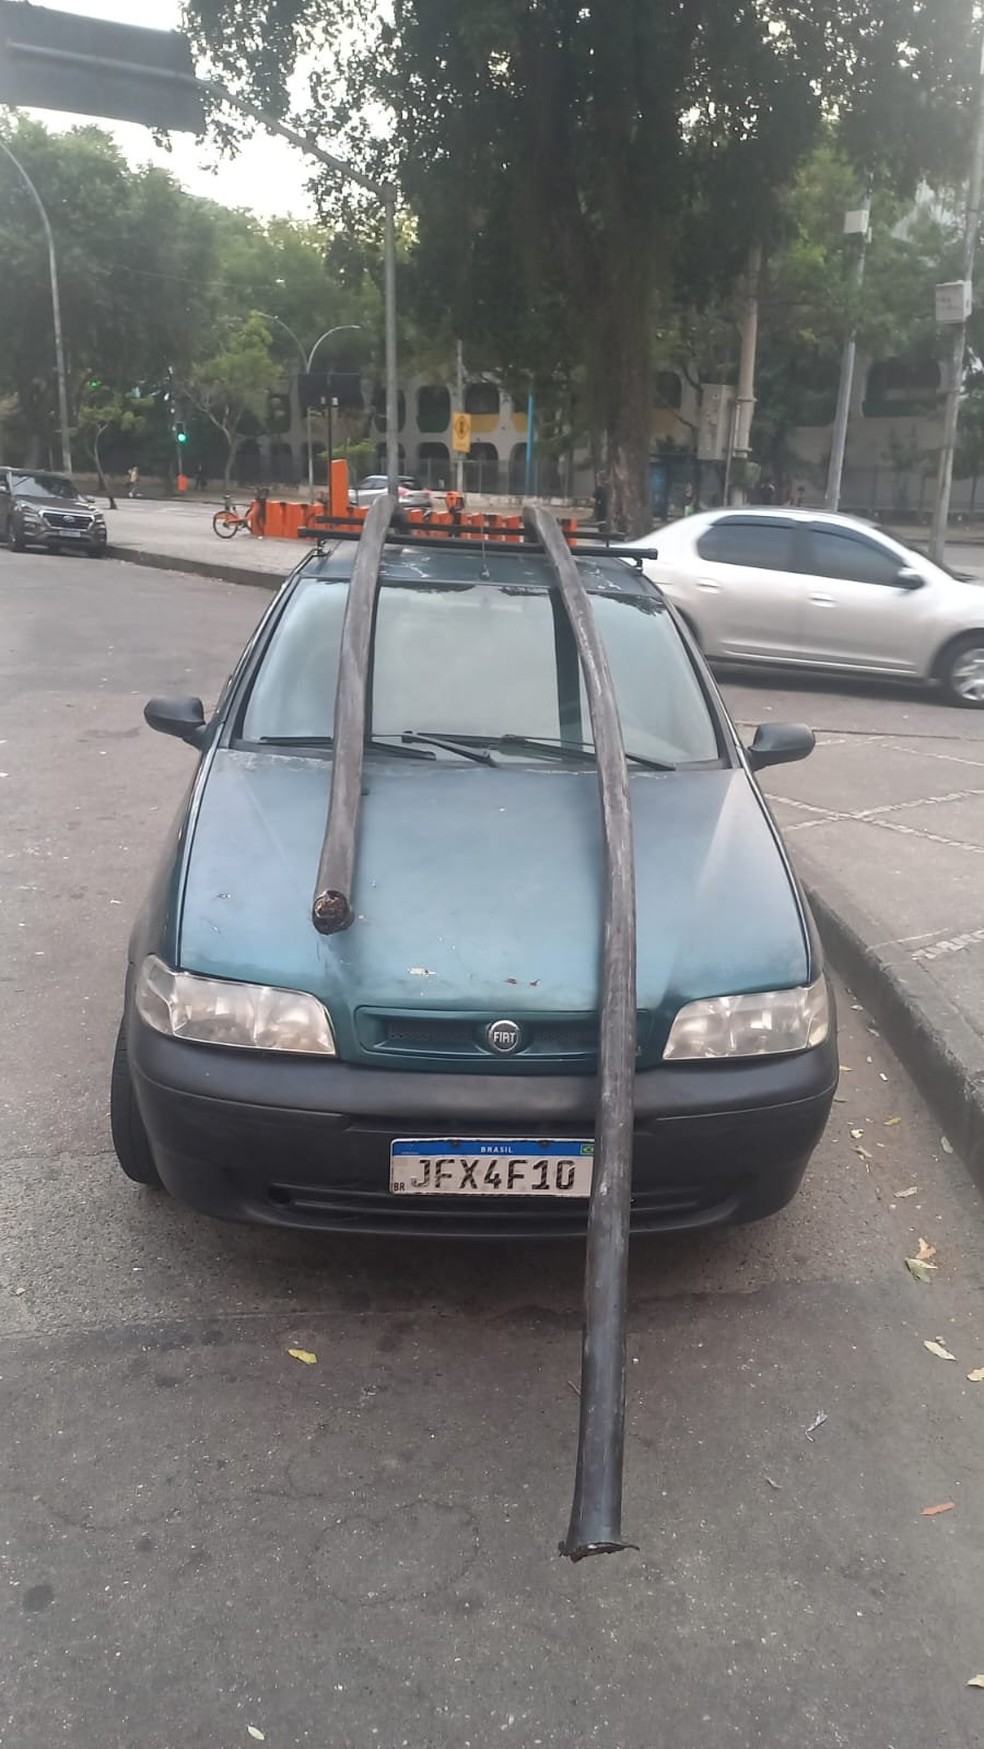 Carro usado pelos criminosos, com partes dos cabos sobre o veículo — Foto: Reprodução / X